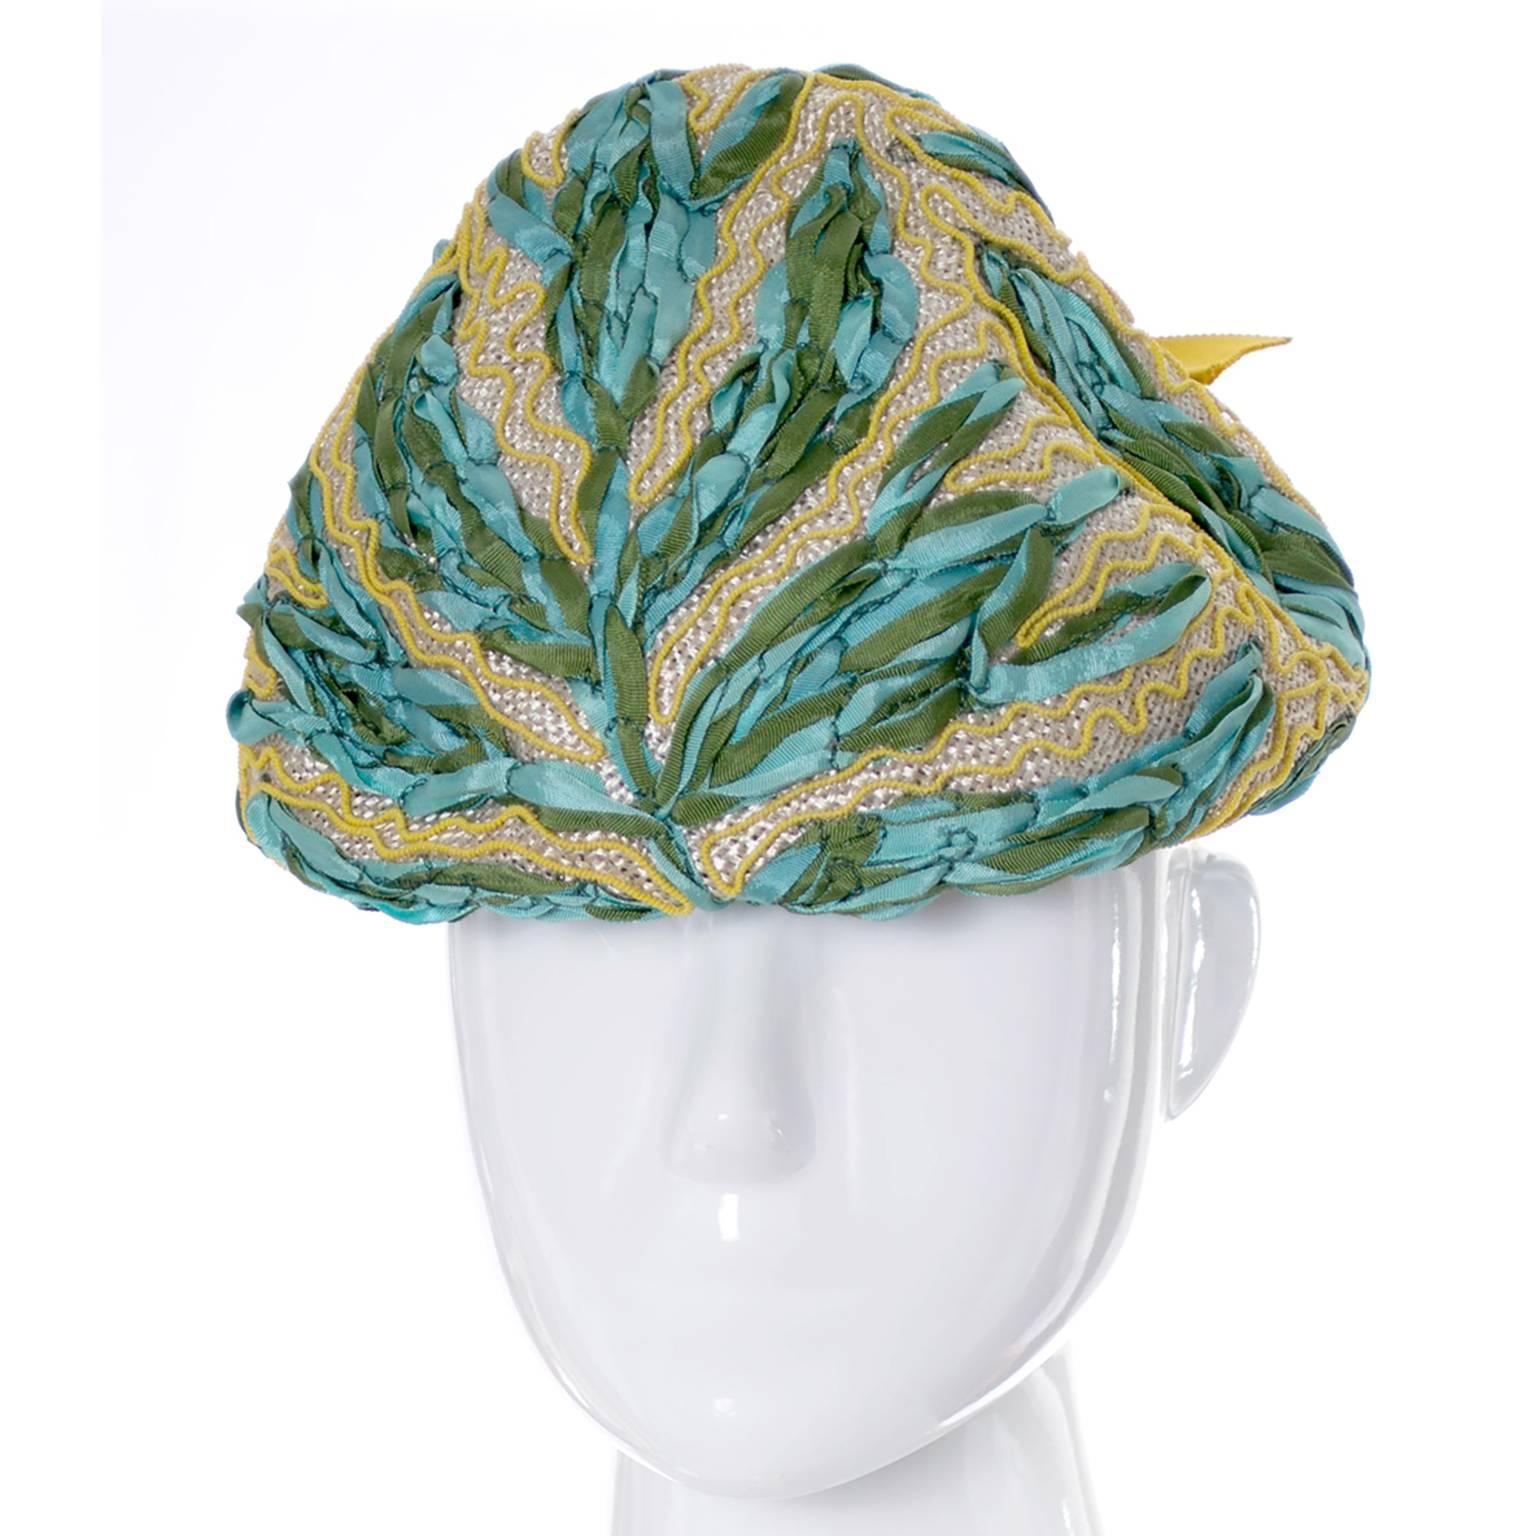 Diese Vintage Lilly Dache Dachettes können den ganzen Frühling oder Sommer getragen werden. Der Hut stammt aus einem prominenten Nachlass, der nur die feinsten Designer-Vintage-Kleider und -Accessoires umfasst. Jedes Mal, wenn ich etwas aus diesem